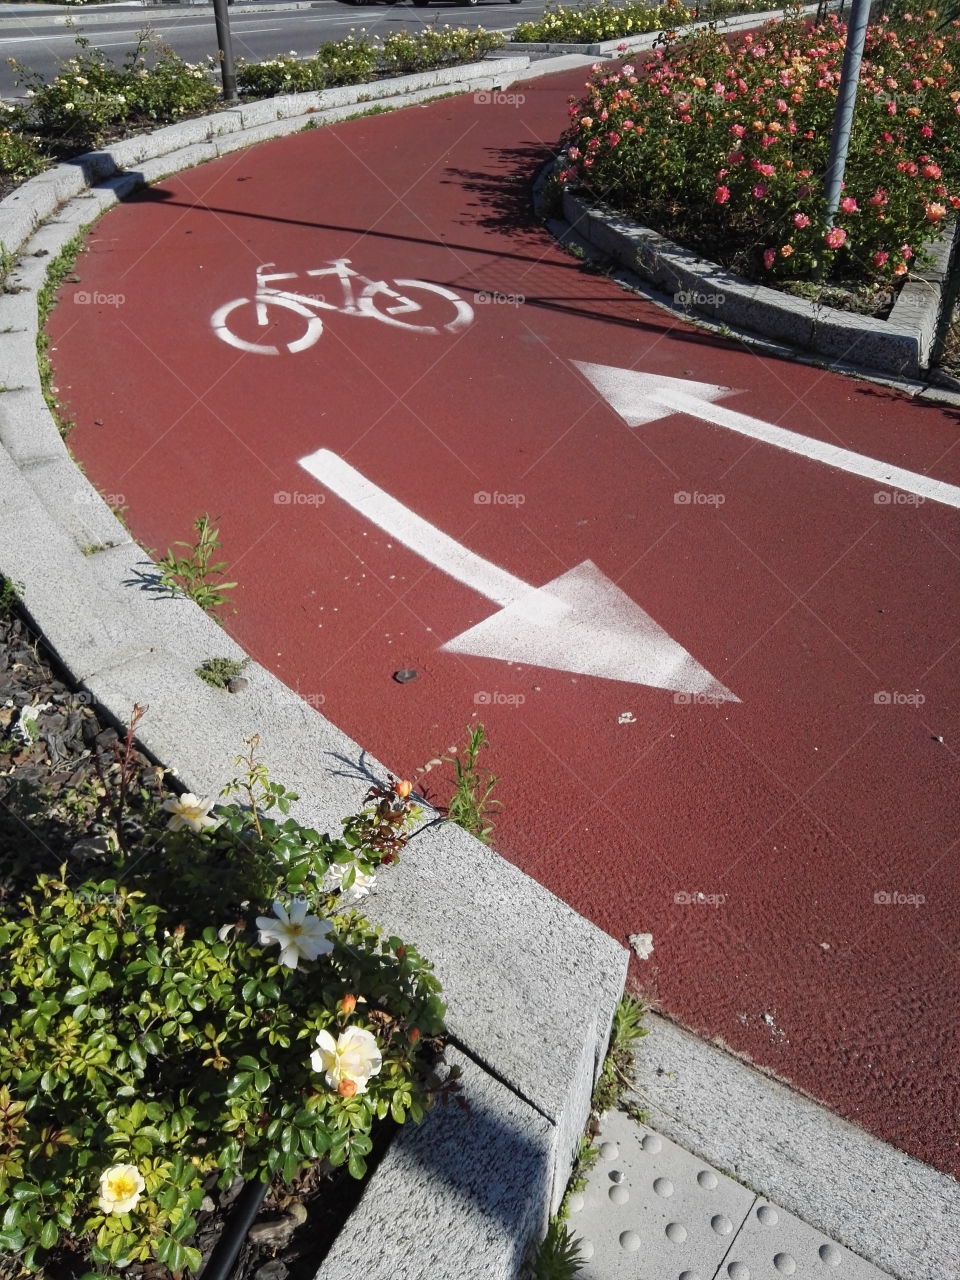 Bicycle lane between flowers